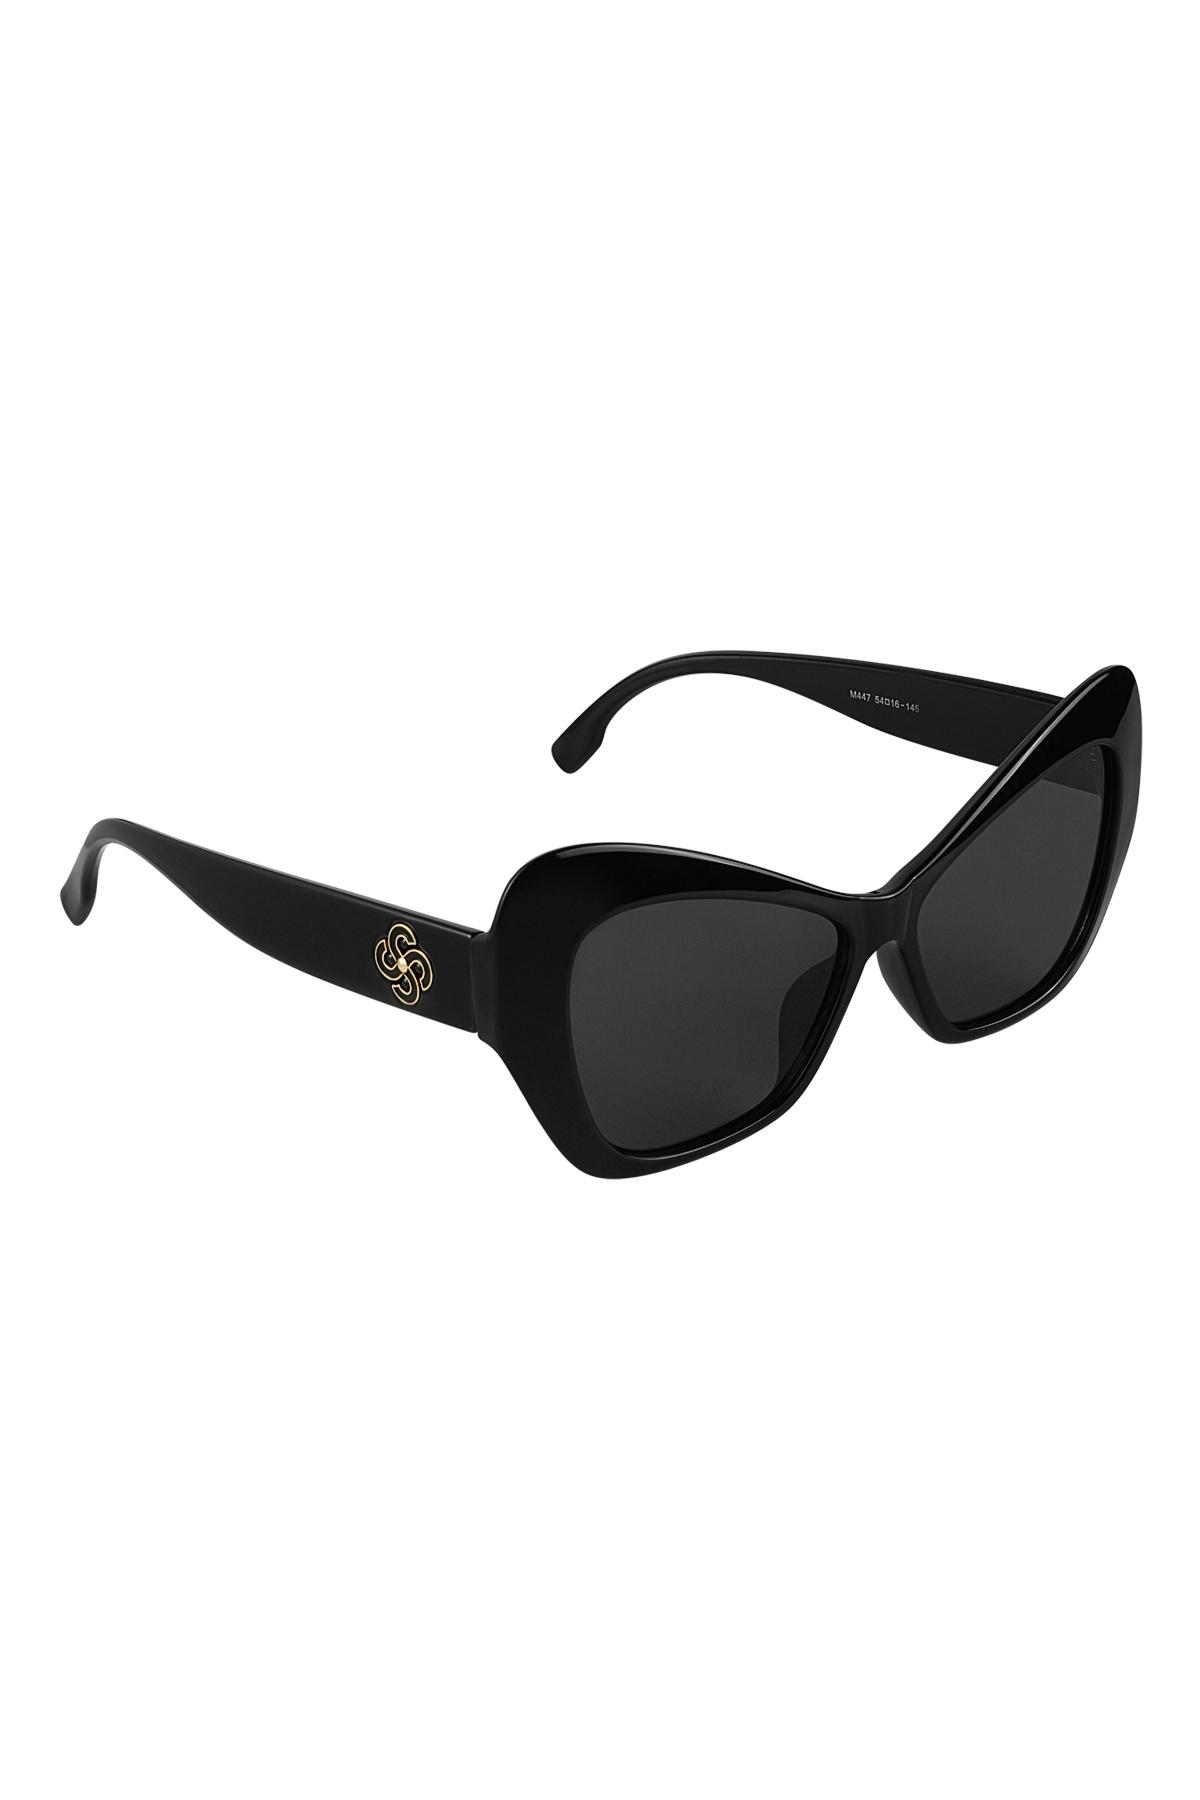 Dichiarazione sugli occhiali da sole Black PC One size h5 